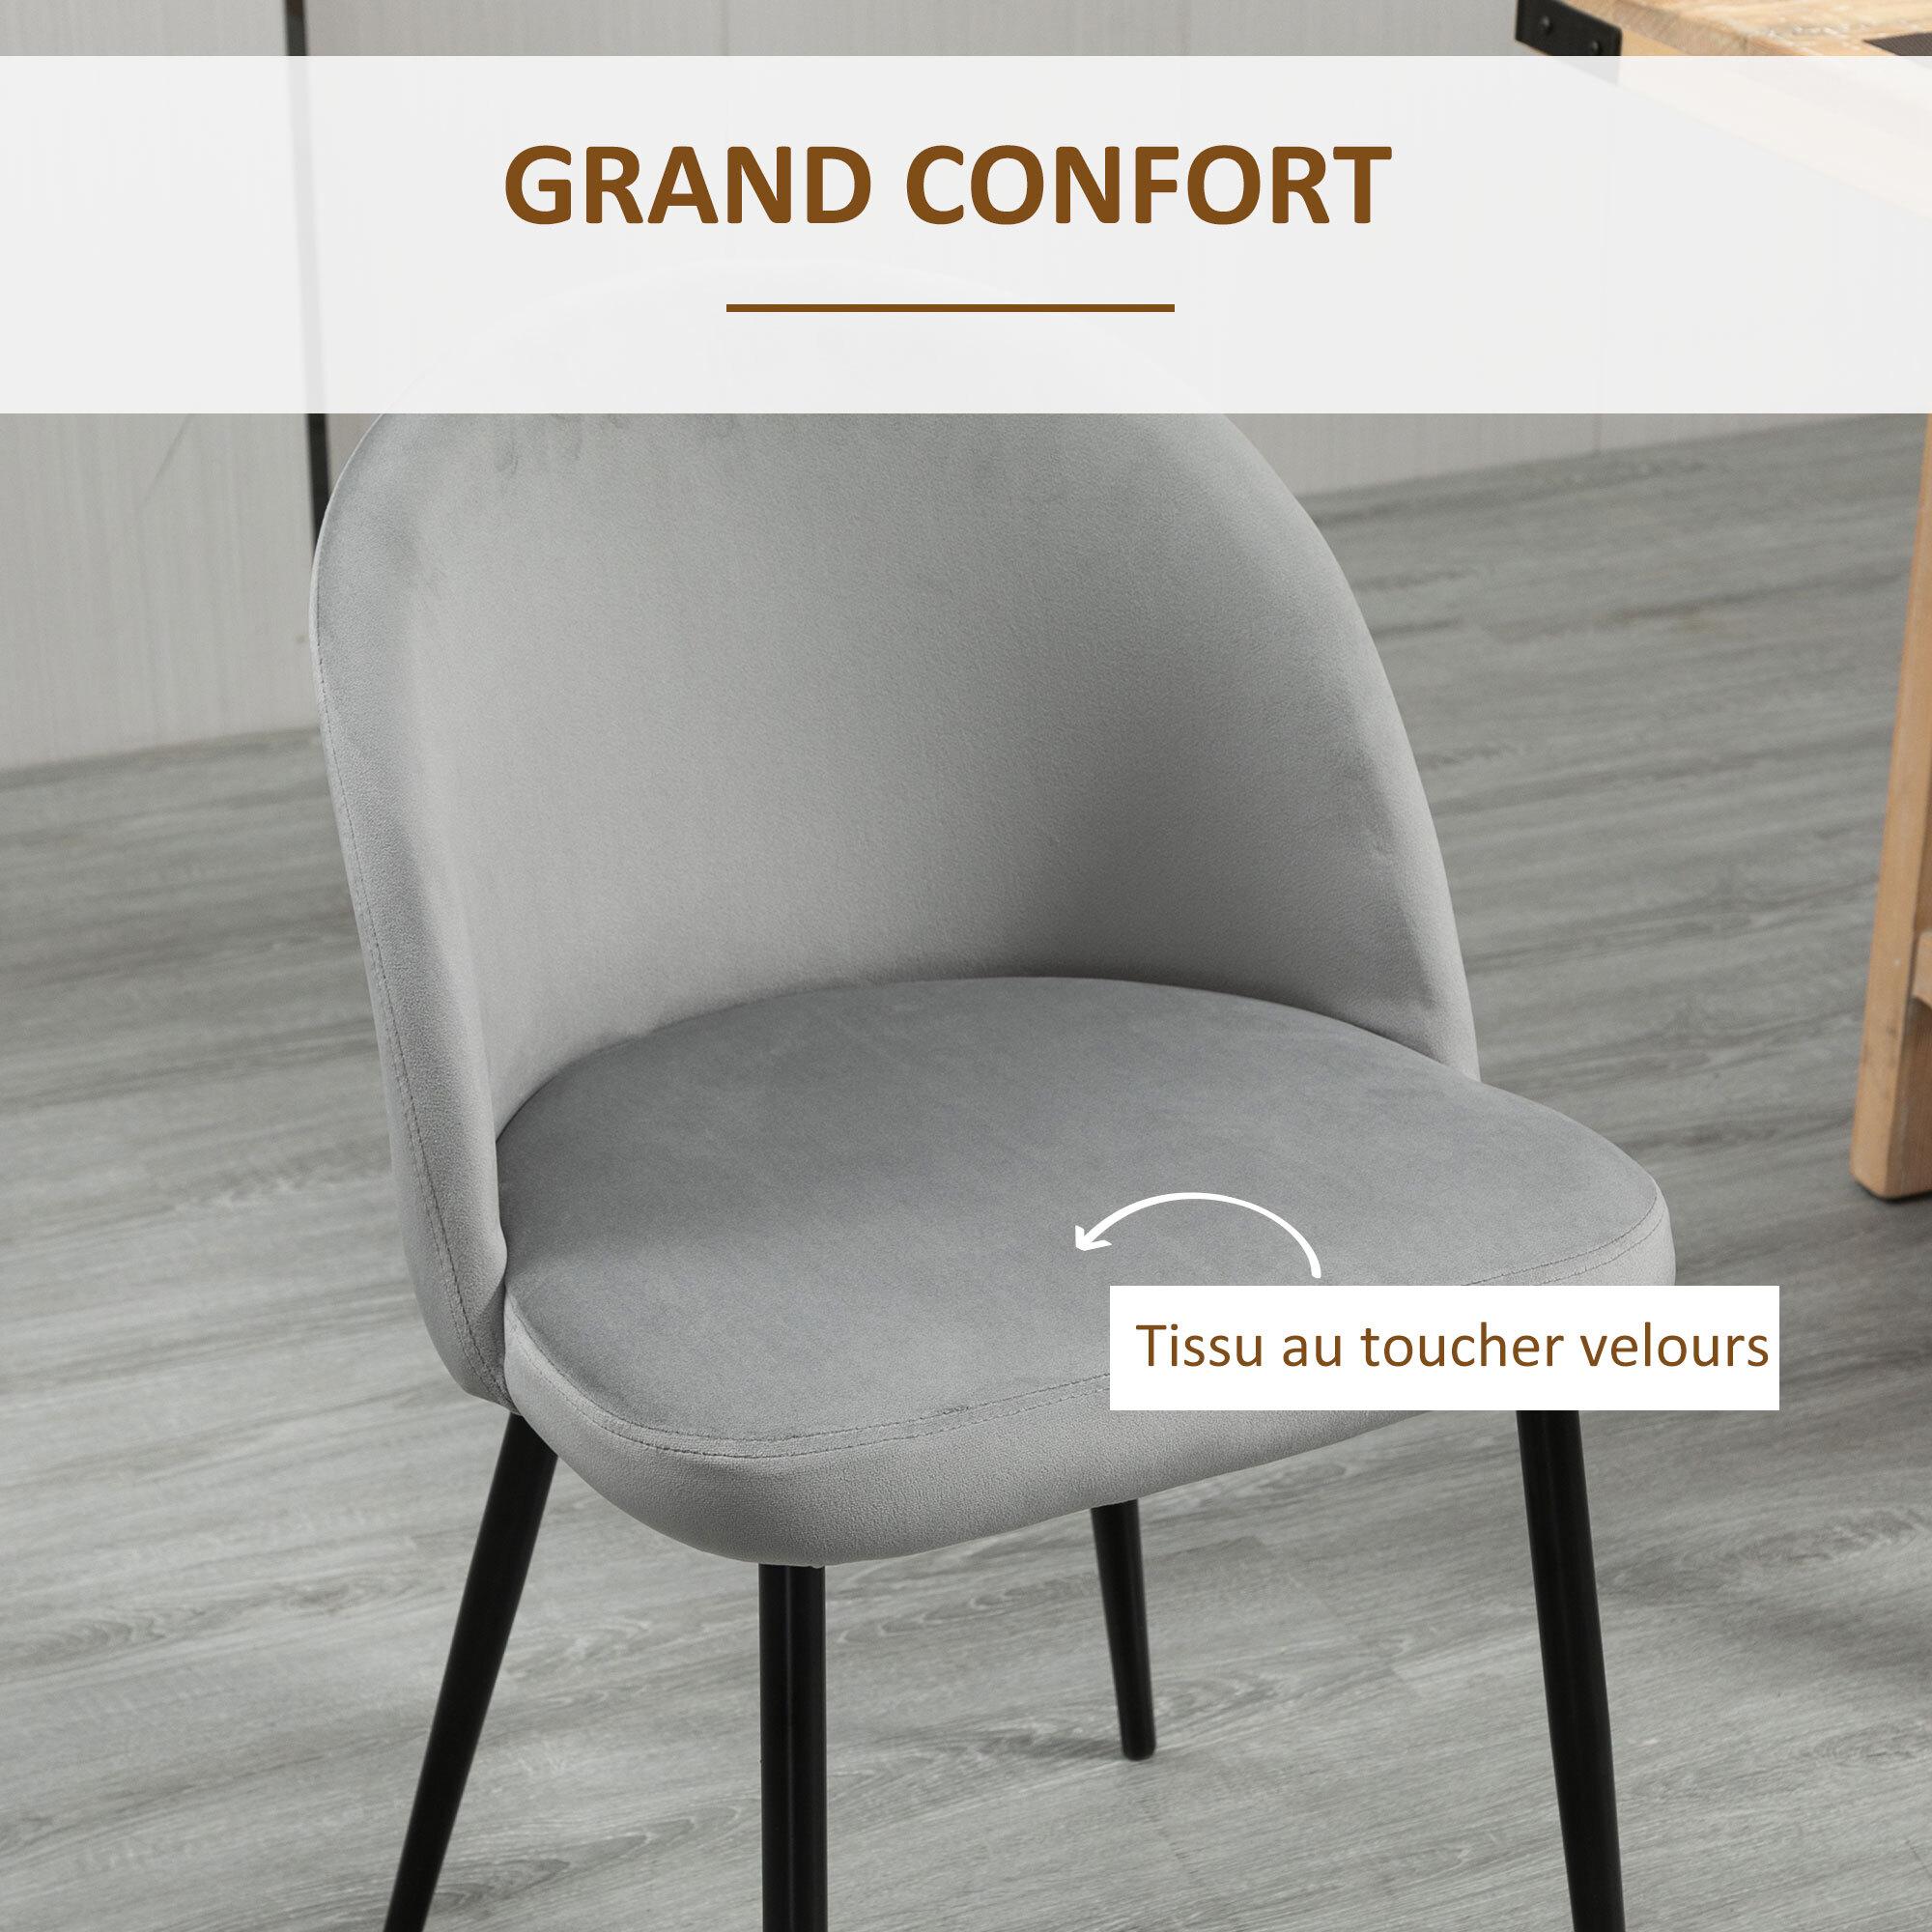 Chaises de visiteur design scandinave - lot de 4 chaises - velours gris bleu canard moutarde